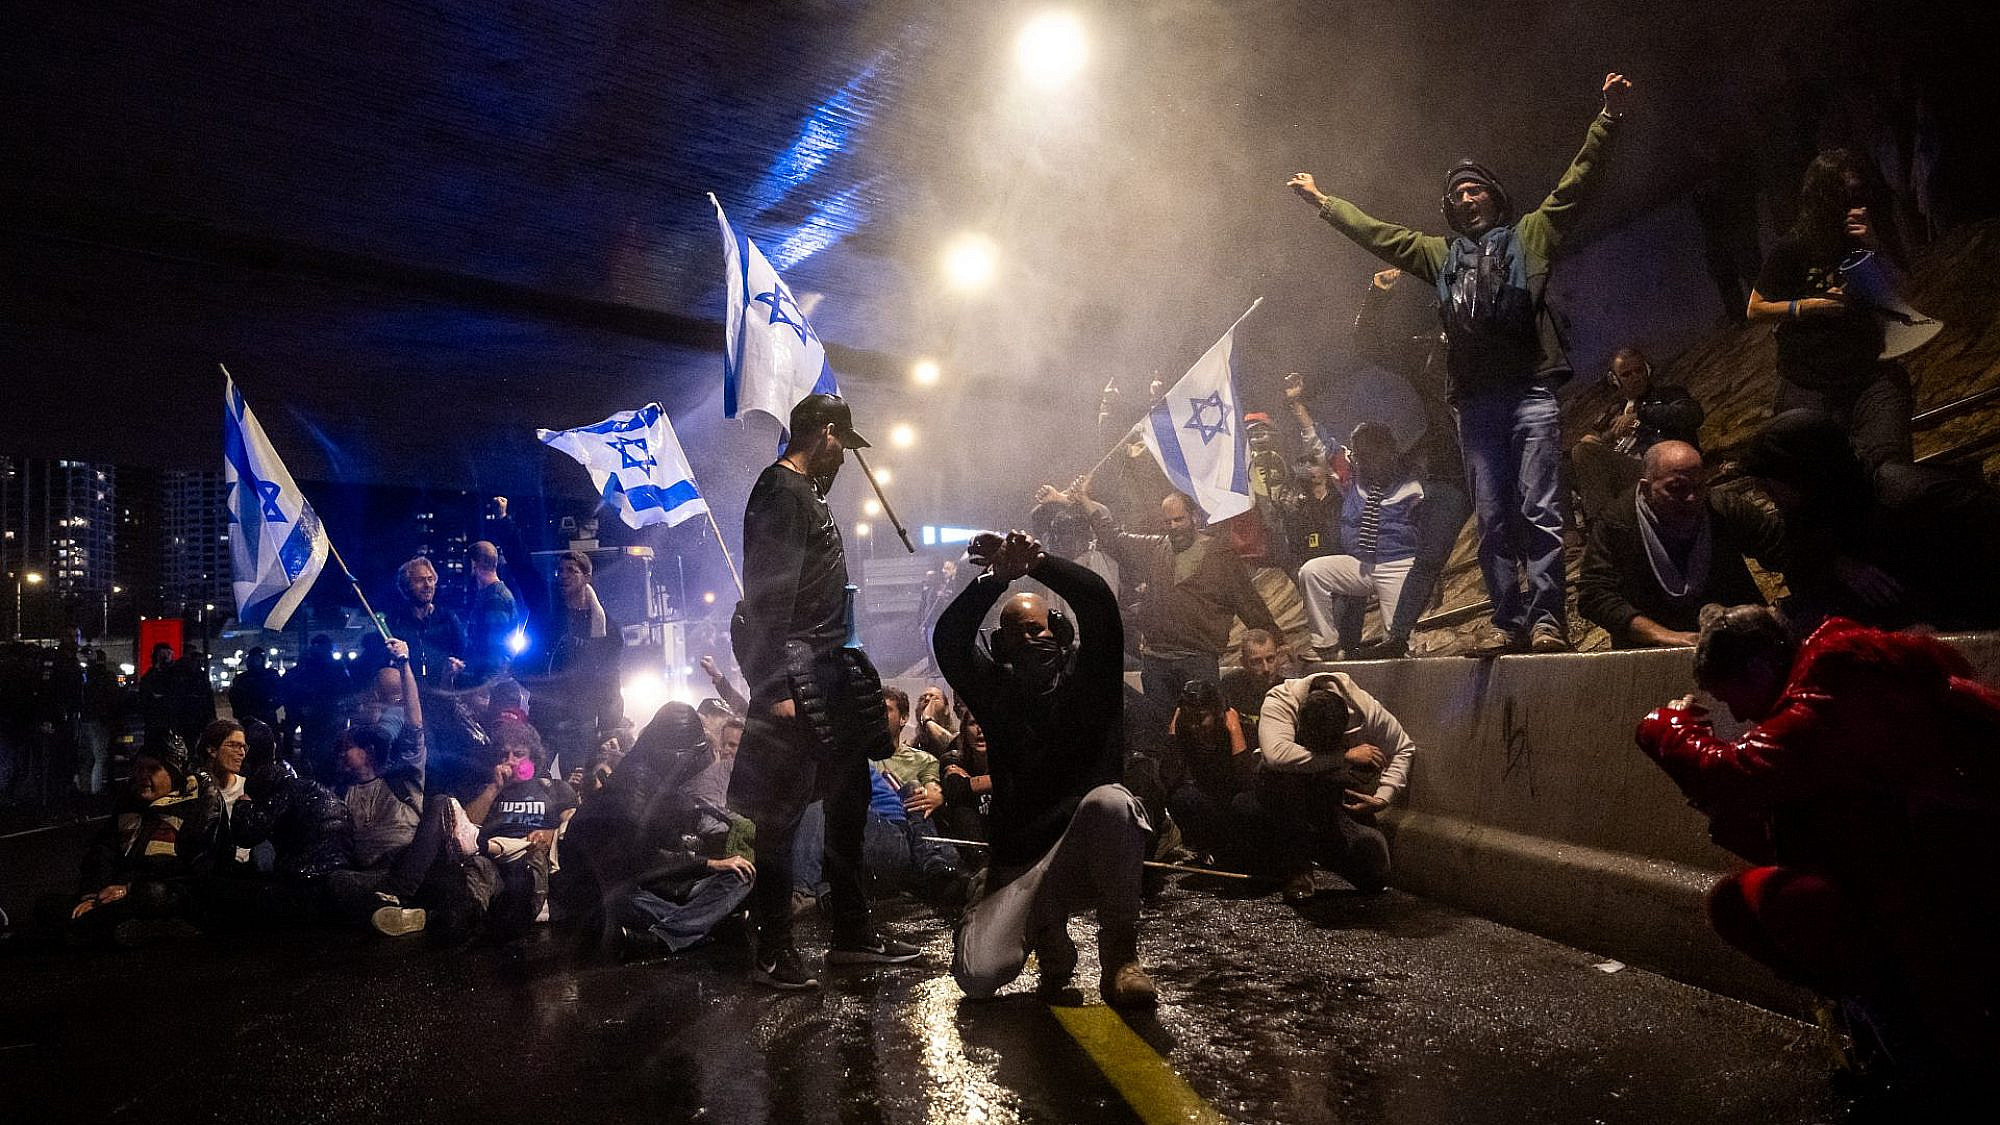 אלימות משטרתית לא תעצור אותם. מפגינים חוסמים את האיילון, 9.3.24 (צילום: אלכסי רוזנפלד/גטי אימג'ס)